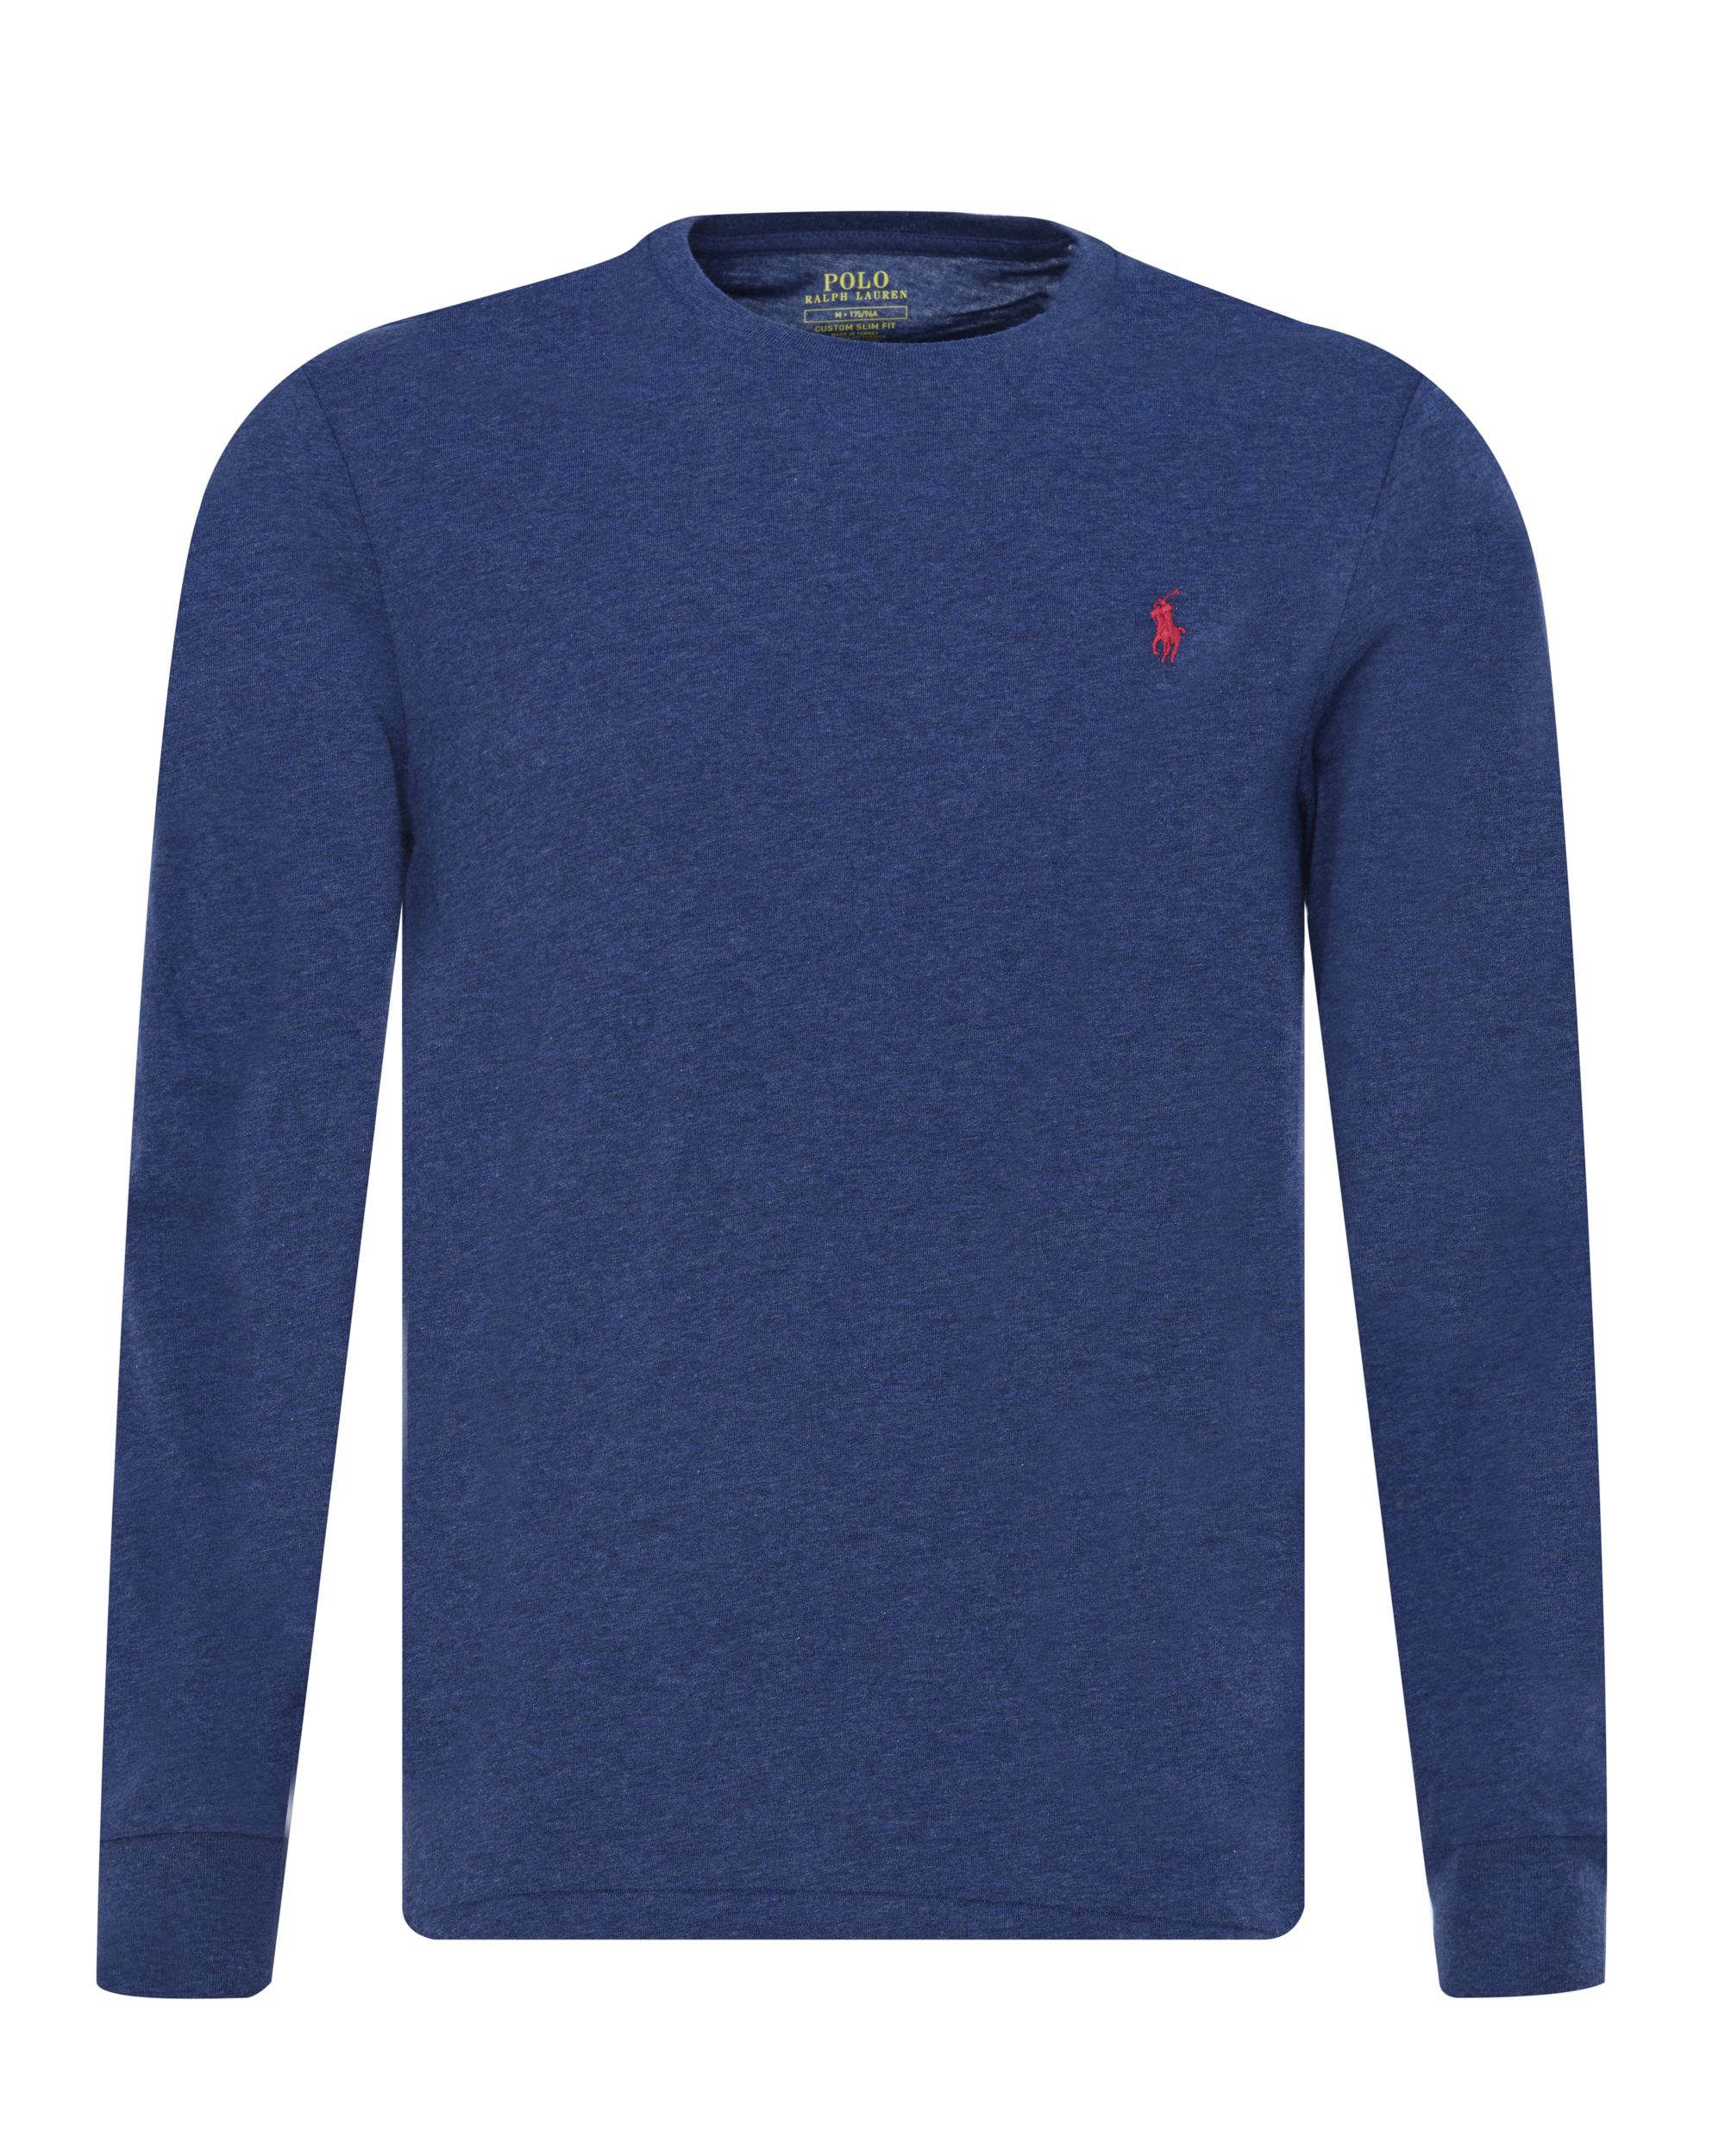 Polo Ralph Lauren T-shirt LM Donker blauw 080559-001-L